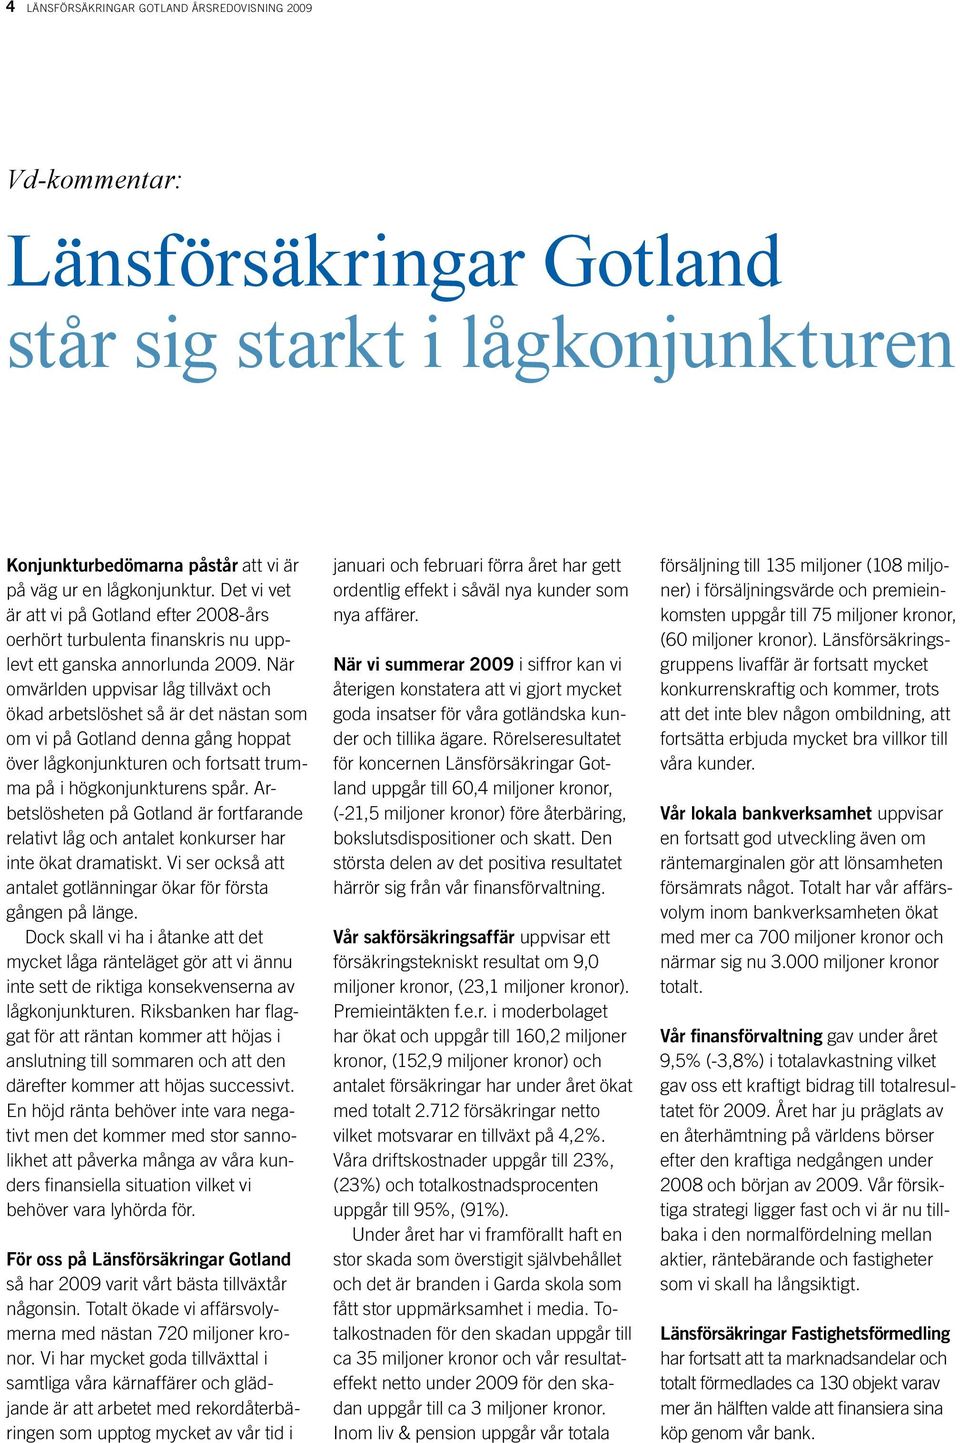 När omvärlden uppvisar låg tillväxt och ökad arbetslöshet så är det nästan som om vi på Gotland denna gång hoppat över lågkonjunkturen och fortsatt trumma på i högkonjunkturens spår.